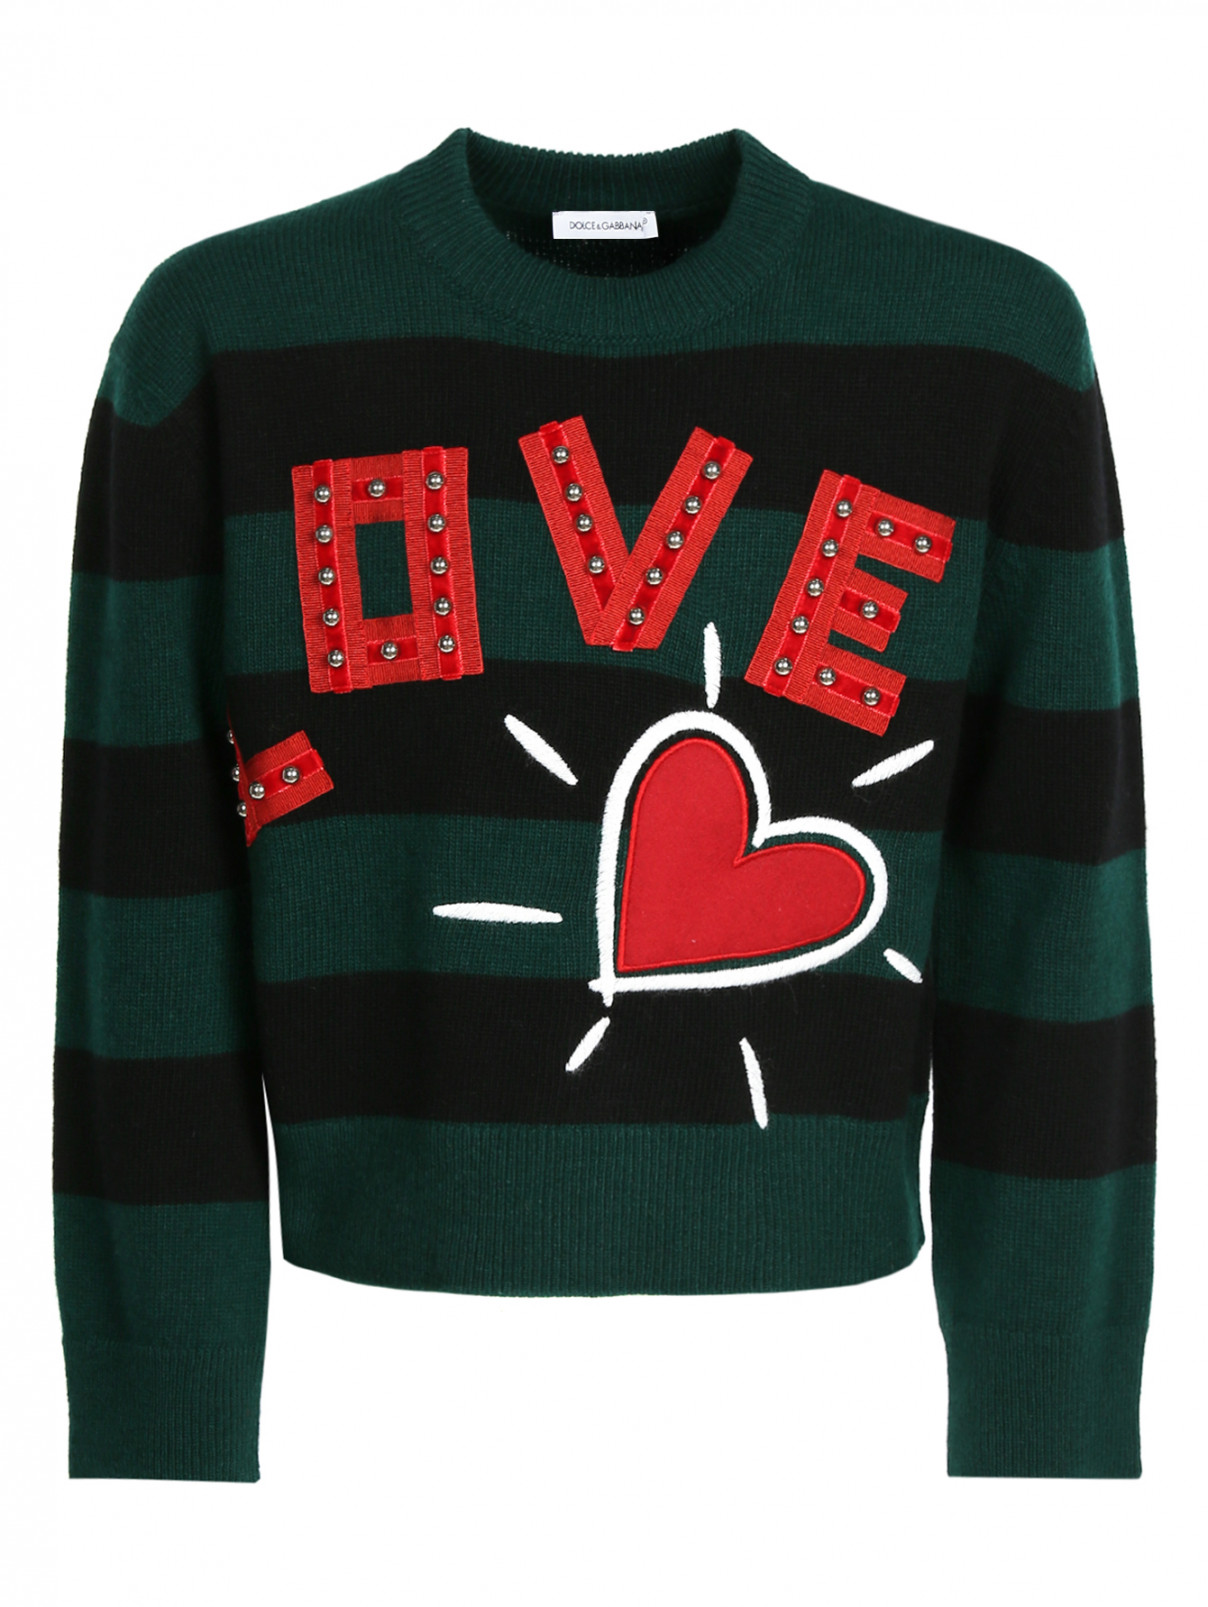 Джемпер из шерсти с аппликацией Dolce & Gabbana  –  Общий вид  – Цвет:  Зеленый